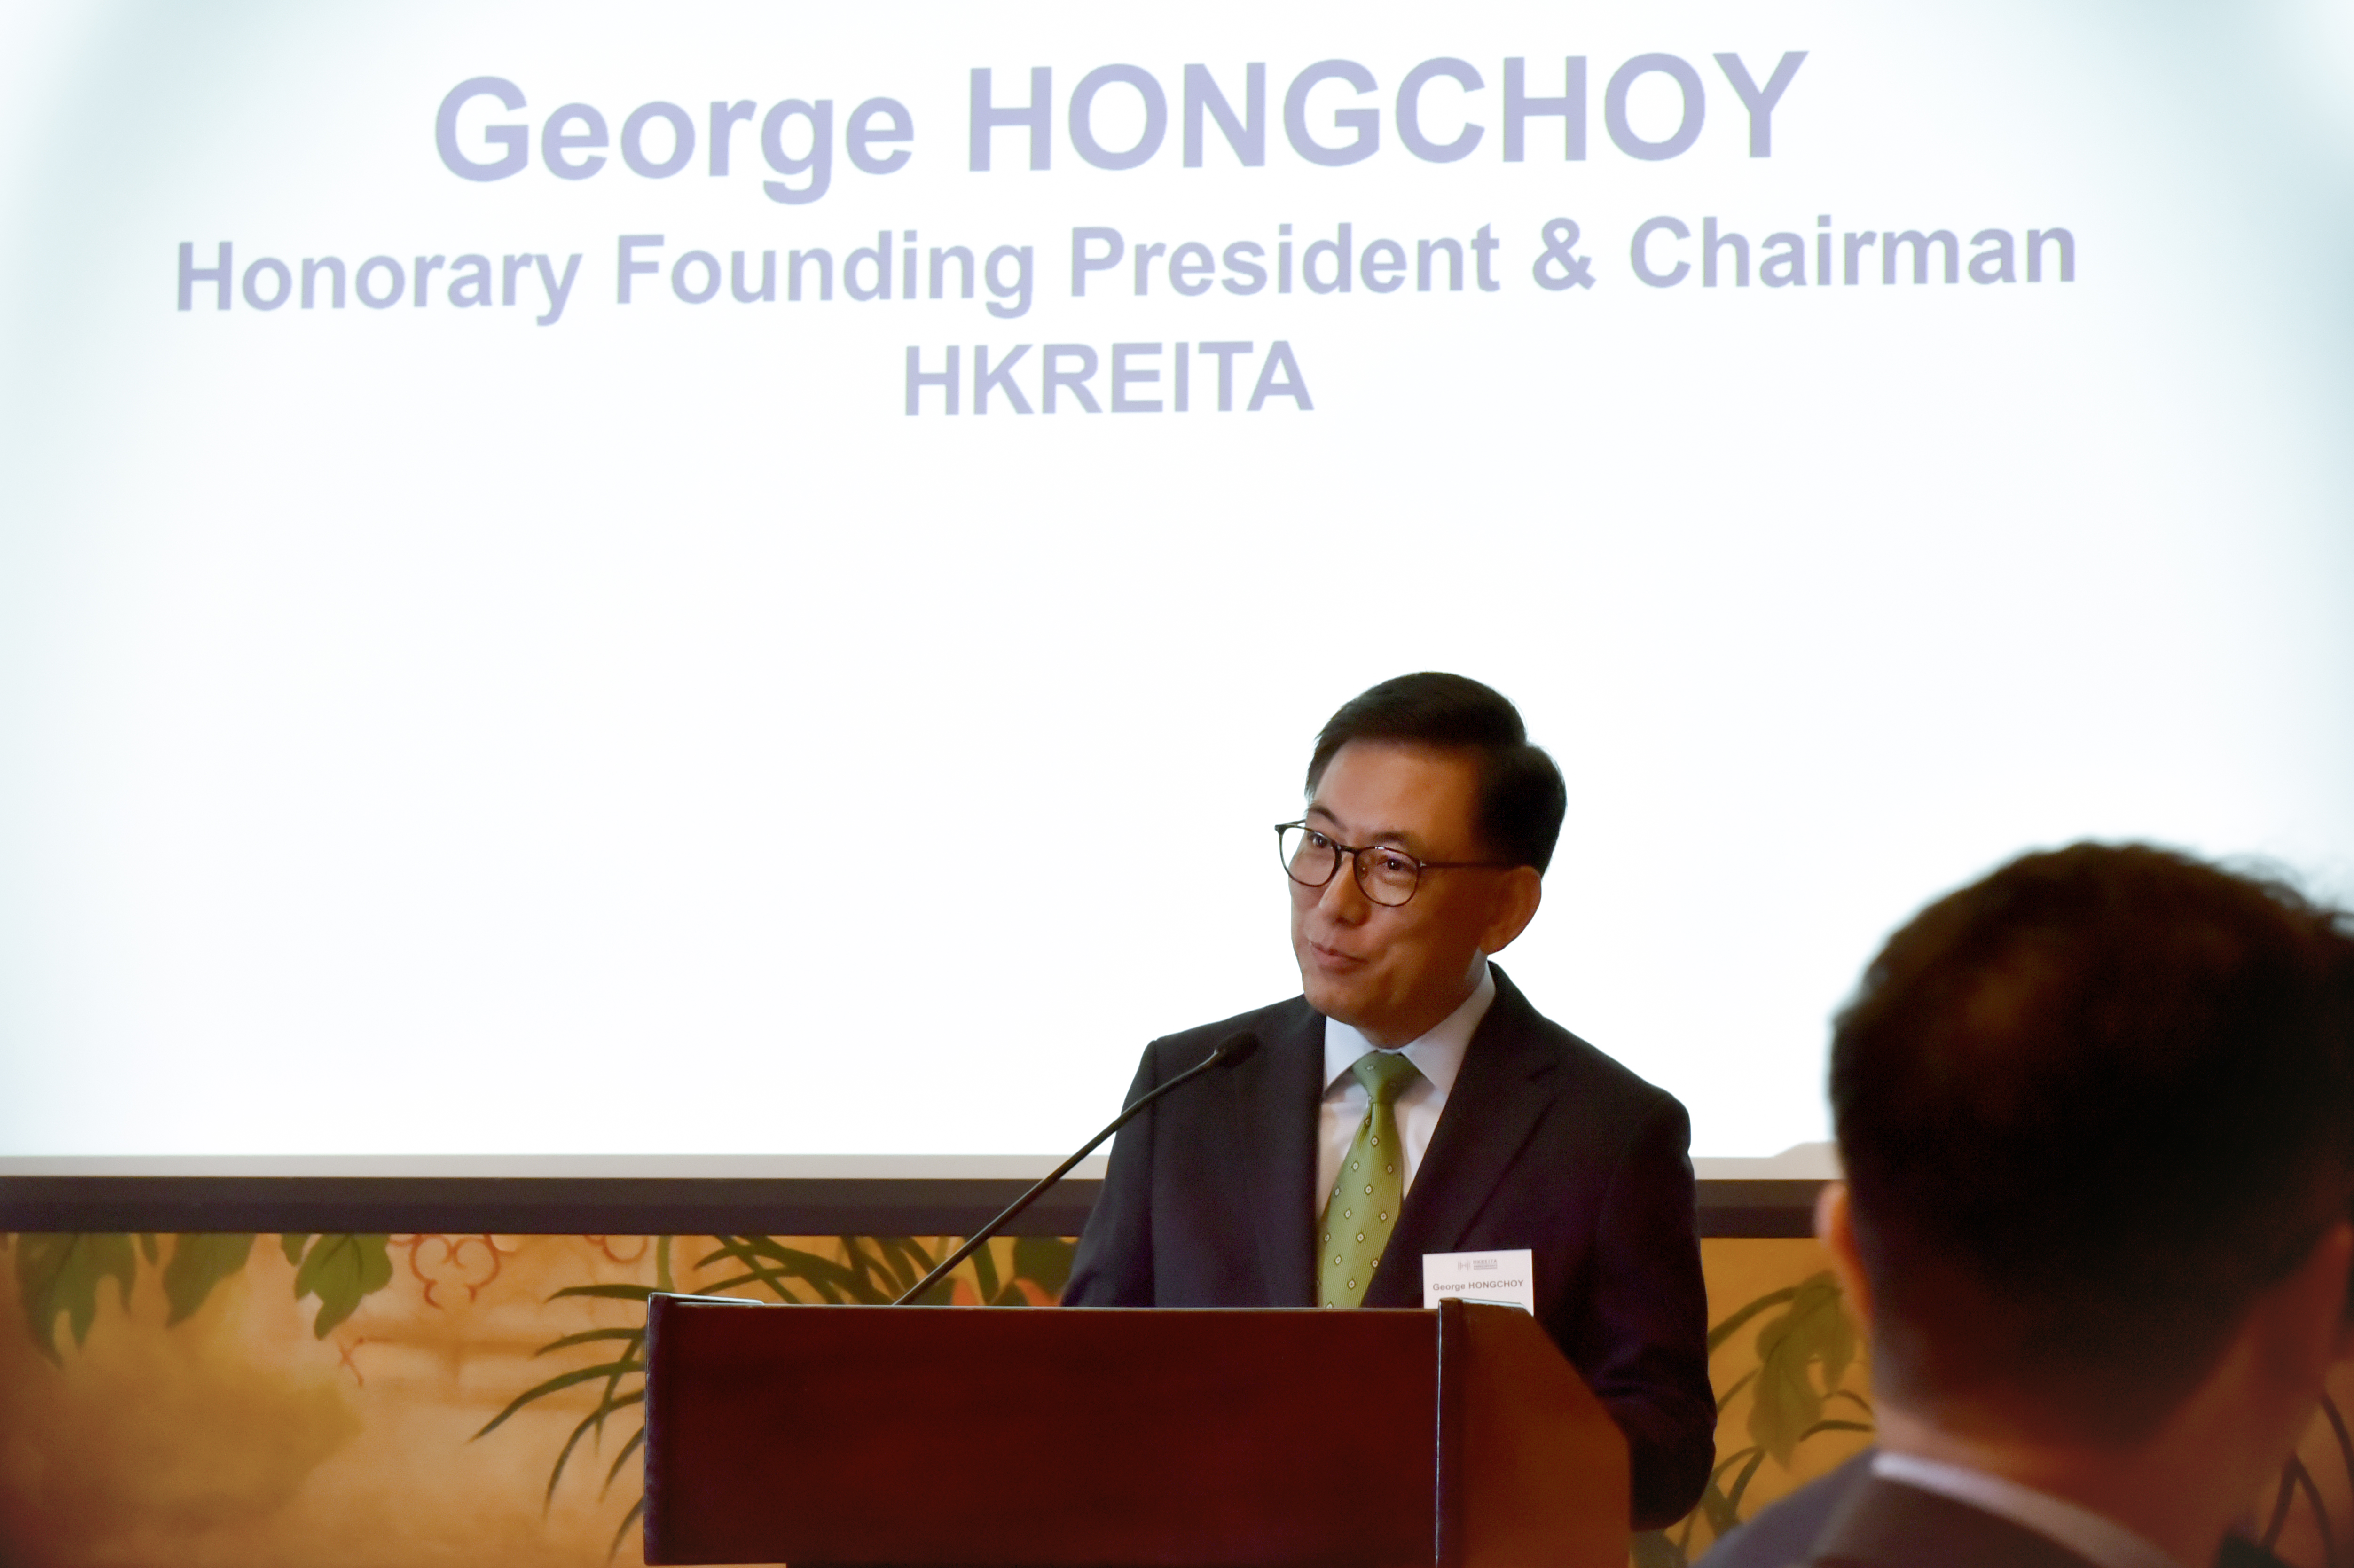 香港房托基金协会主席王国龙于欢迎辞中表示，协会的目标是为业界建立一个协作平台，共同促进香港房地产投资信托基金市场的整体发展，培养一个充满活力和领先的亚太区房托基金市场。